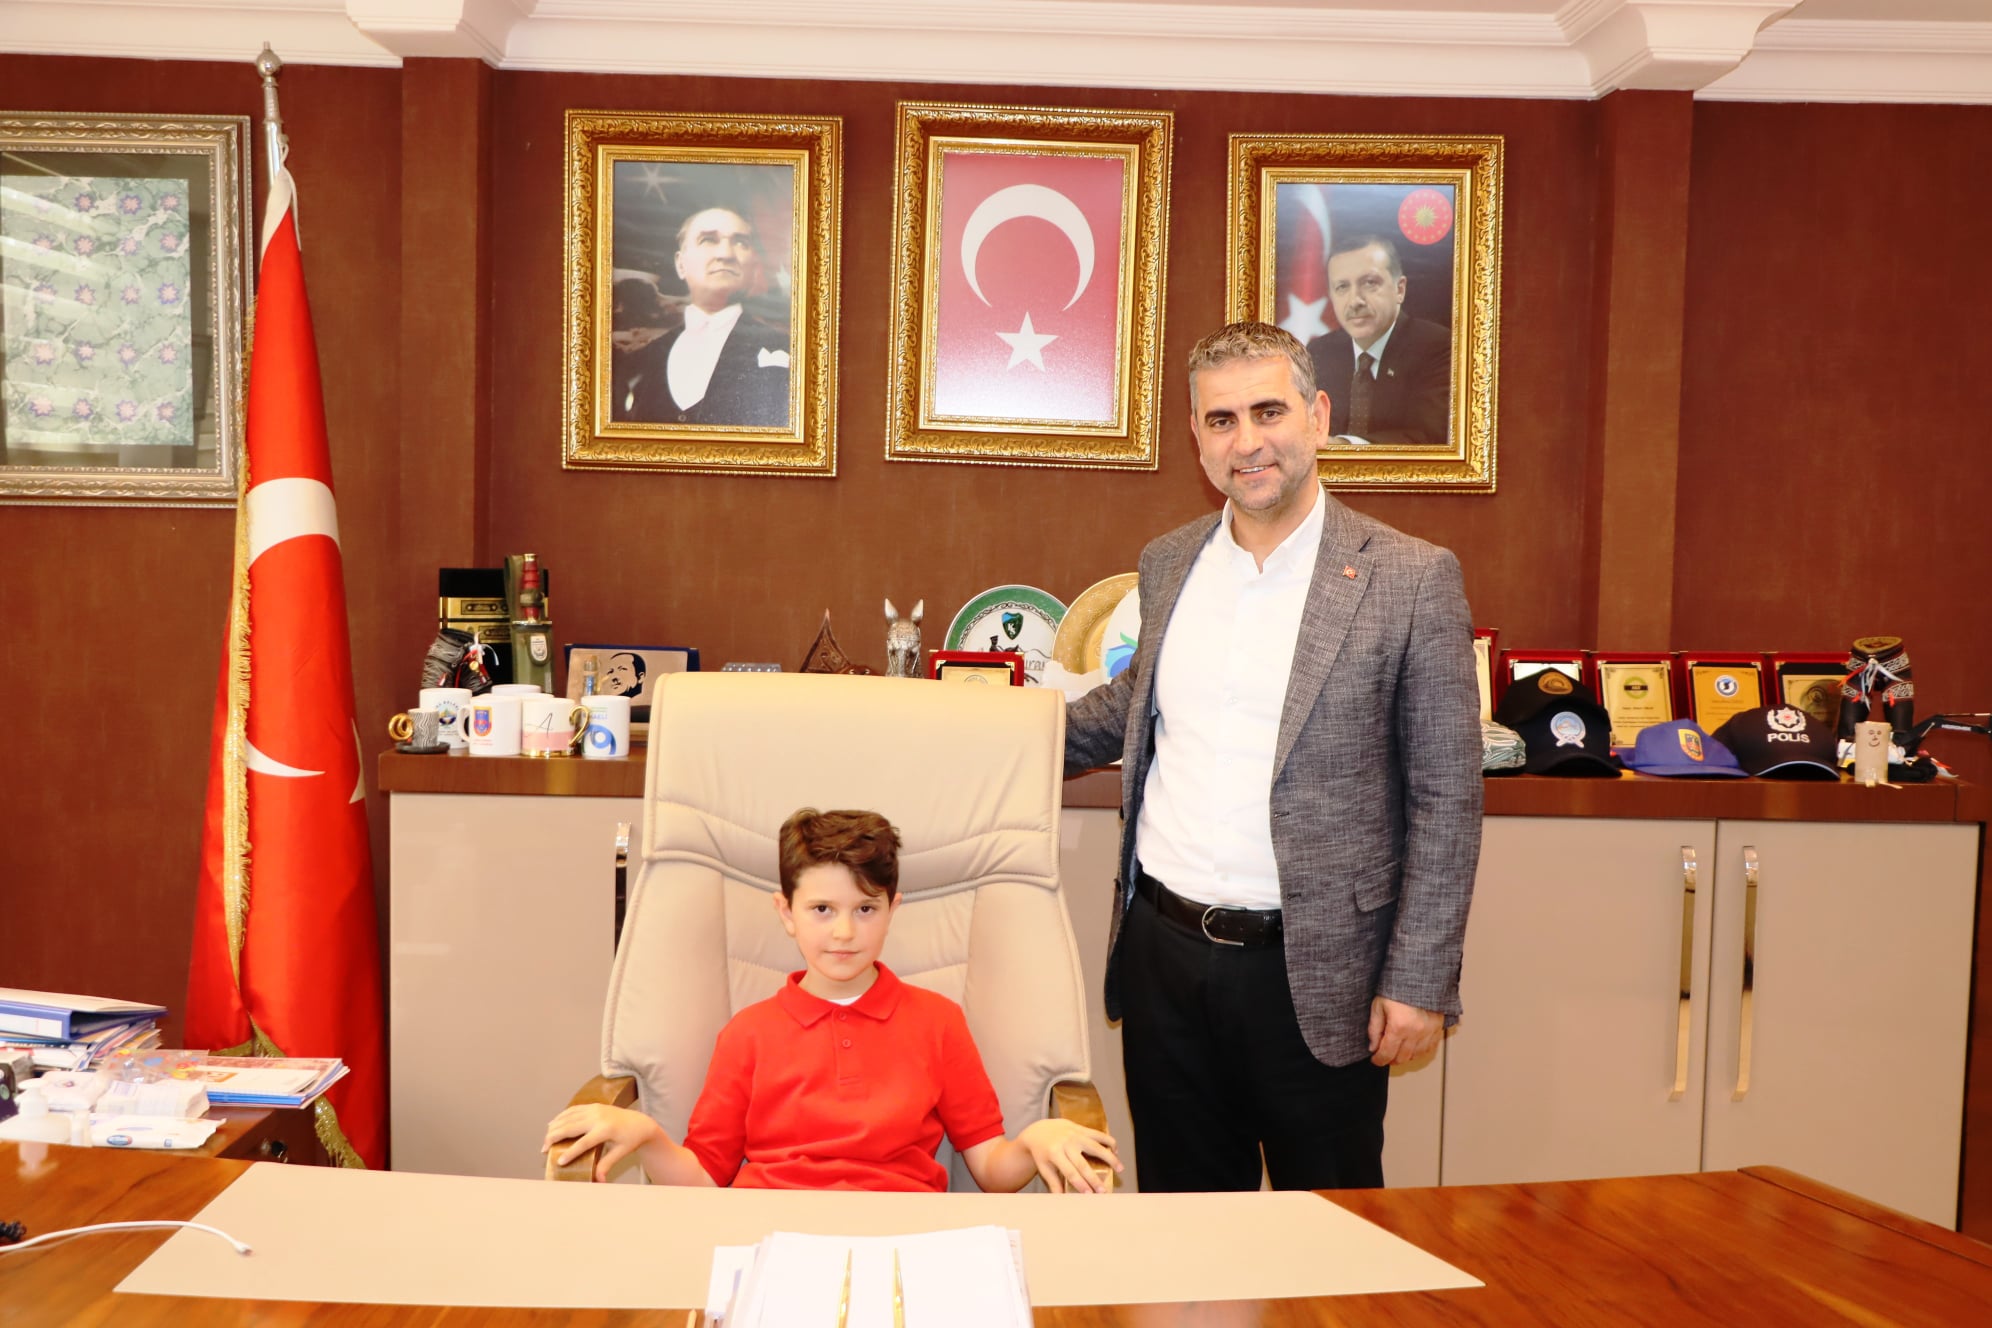 Kandıra Belediye Başkanı Adnan Turan, 23 Nisan Ulusal Egemenlik ve Çocuk Bayramı’nda koltuğunu Kefken Oğuz Kır İlkokulu 4. sınıf öğrencileri Duru Yalçınkaya ve Mehmet Emir Akgül’e bıraktı.